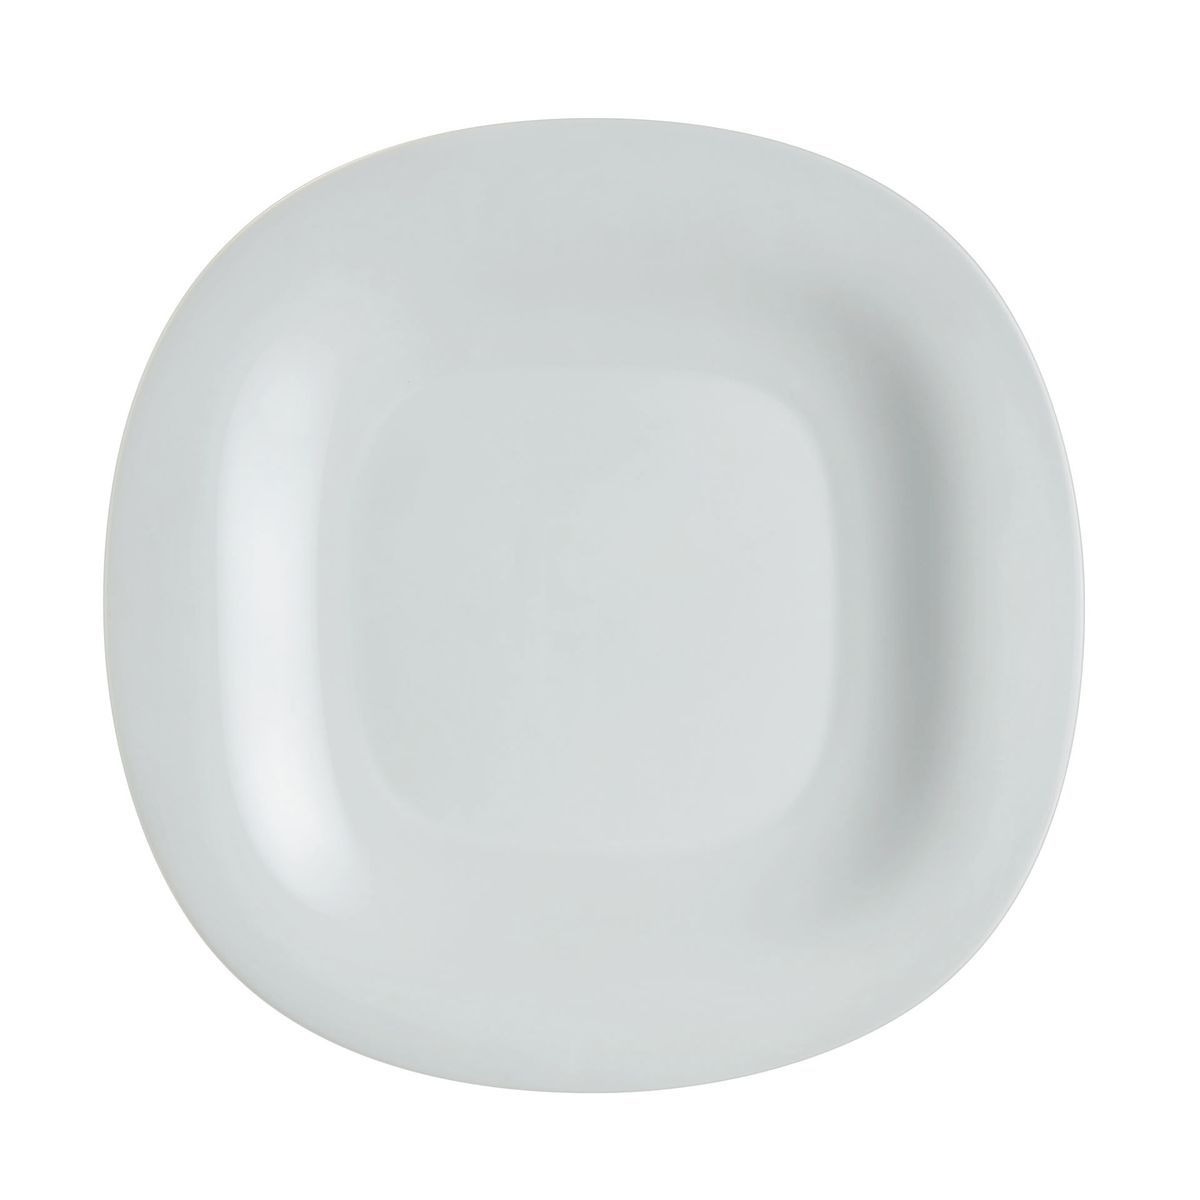 Тарелка обеденная Luminarc Carine granit 27 см тарелка суповая luminarc carine turquoise 21 см